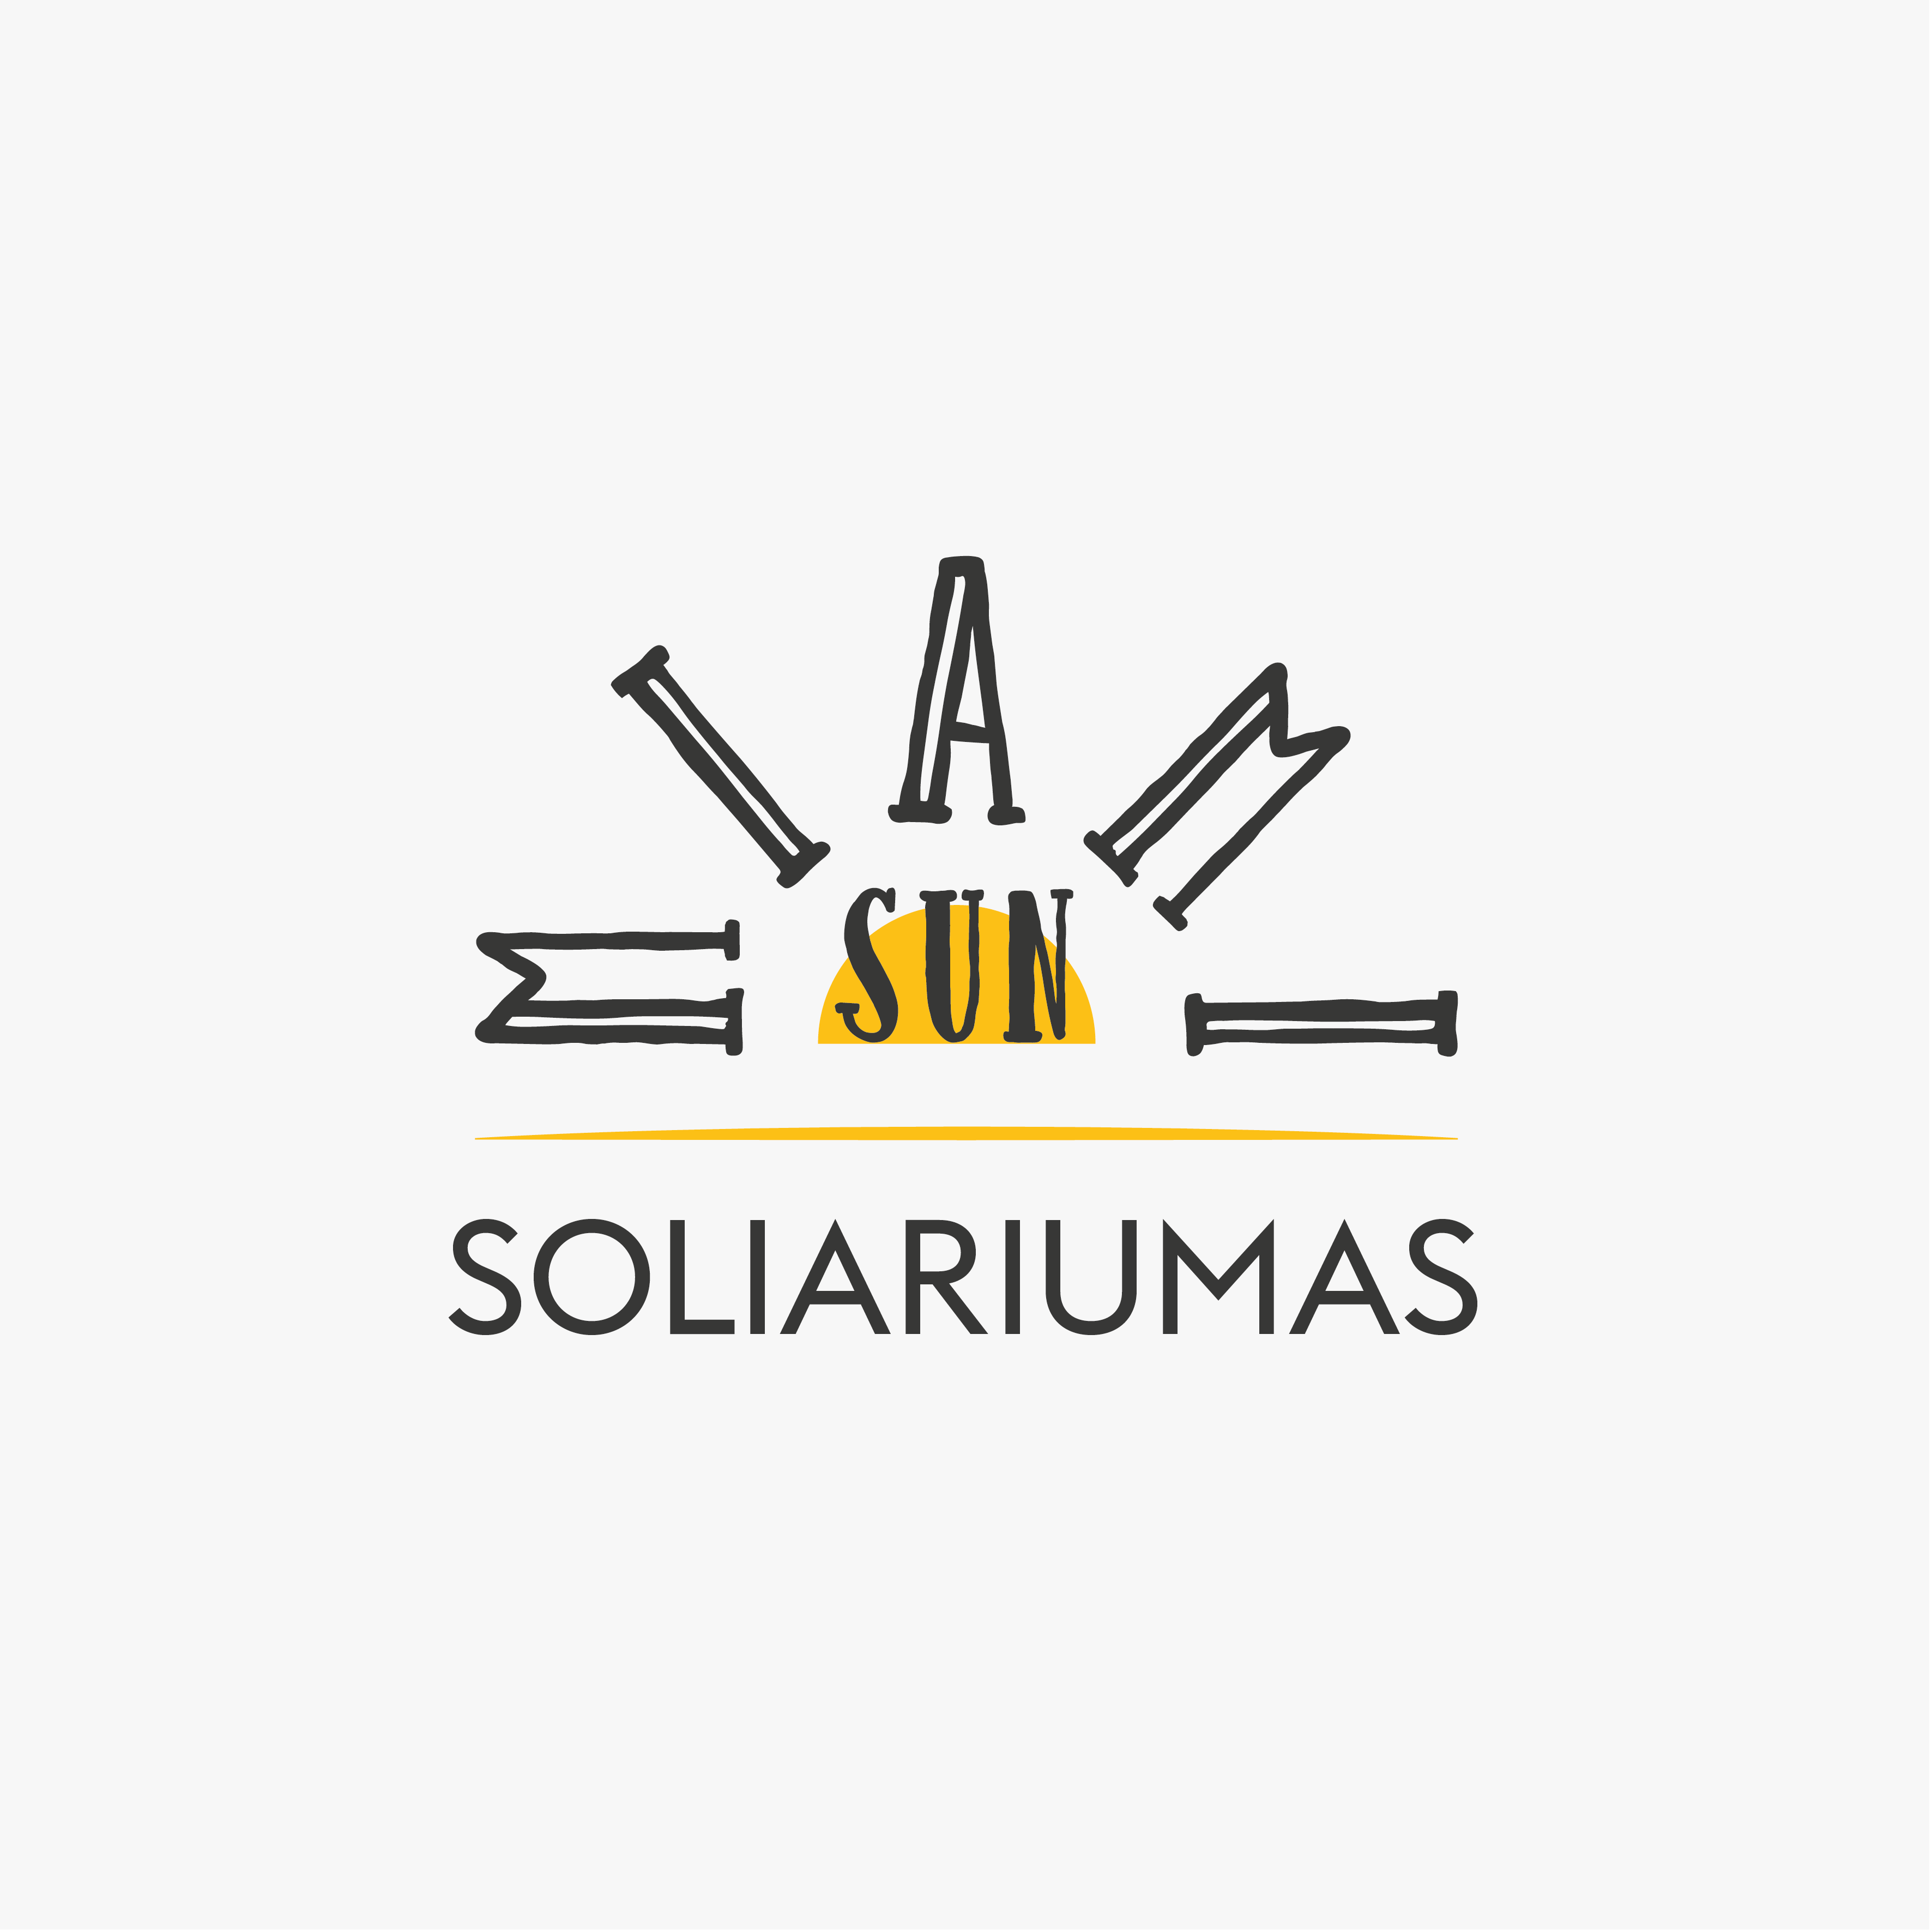 Miami Sun Soliariumo logo-01